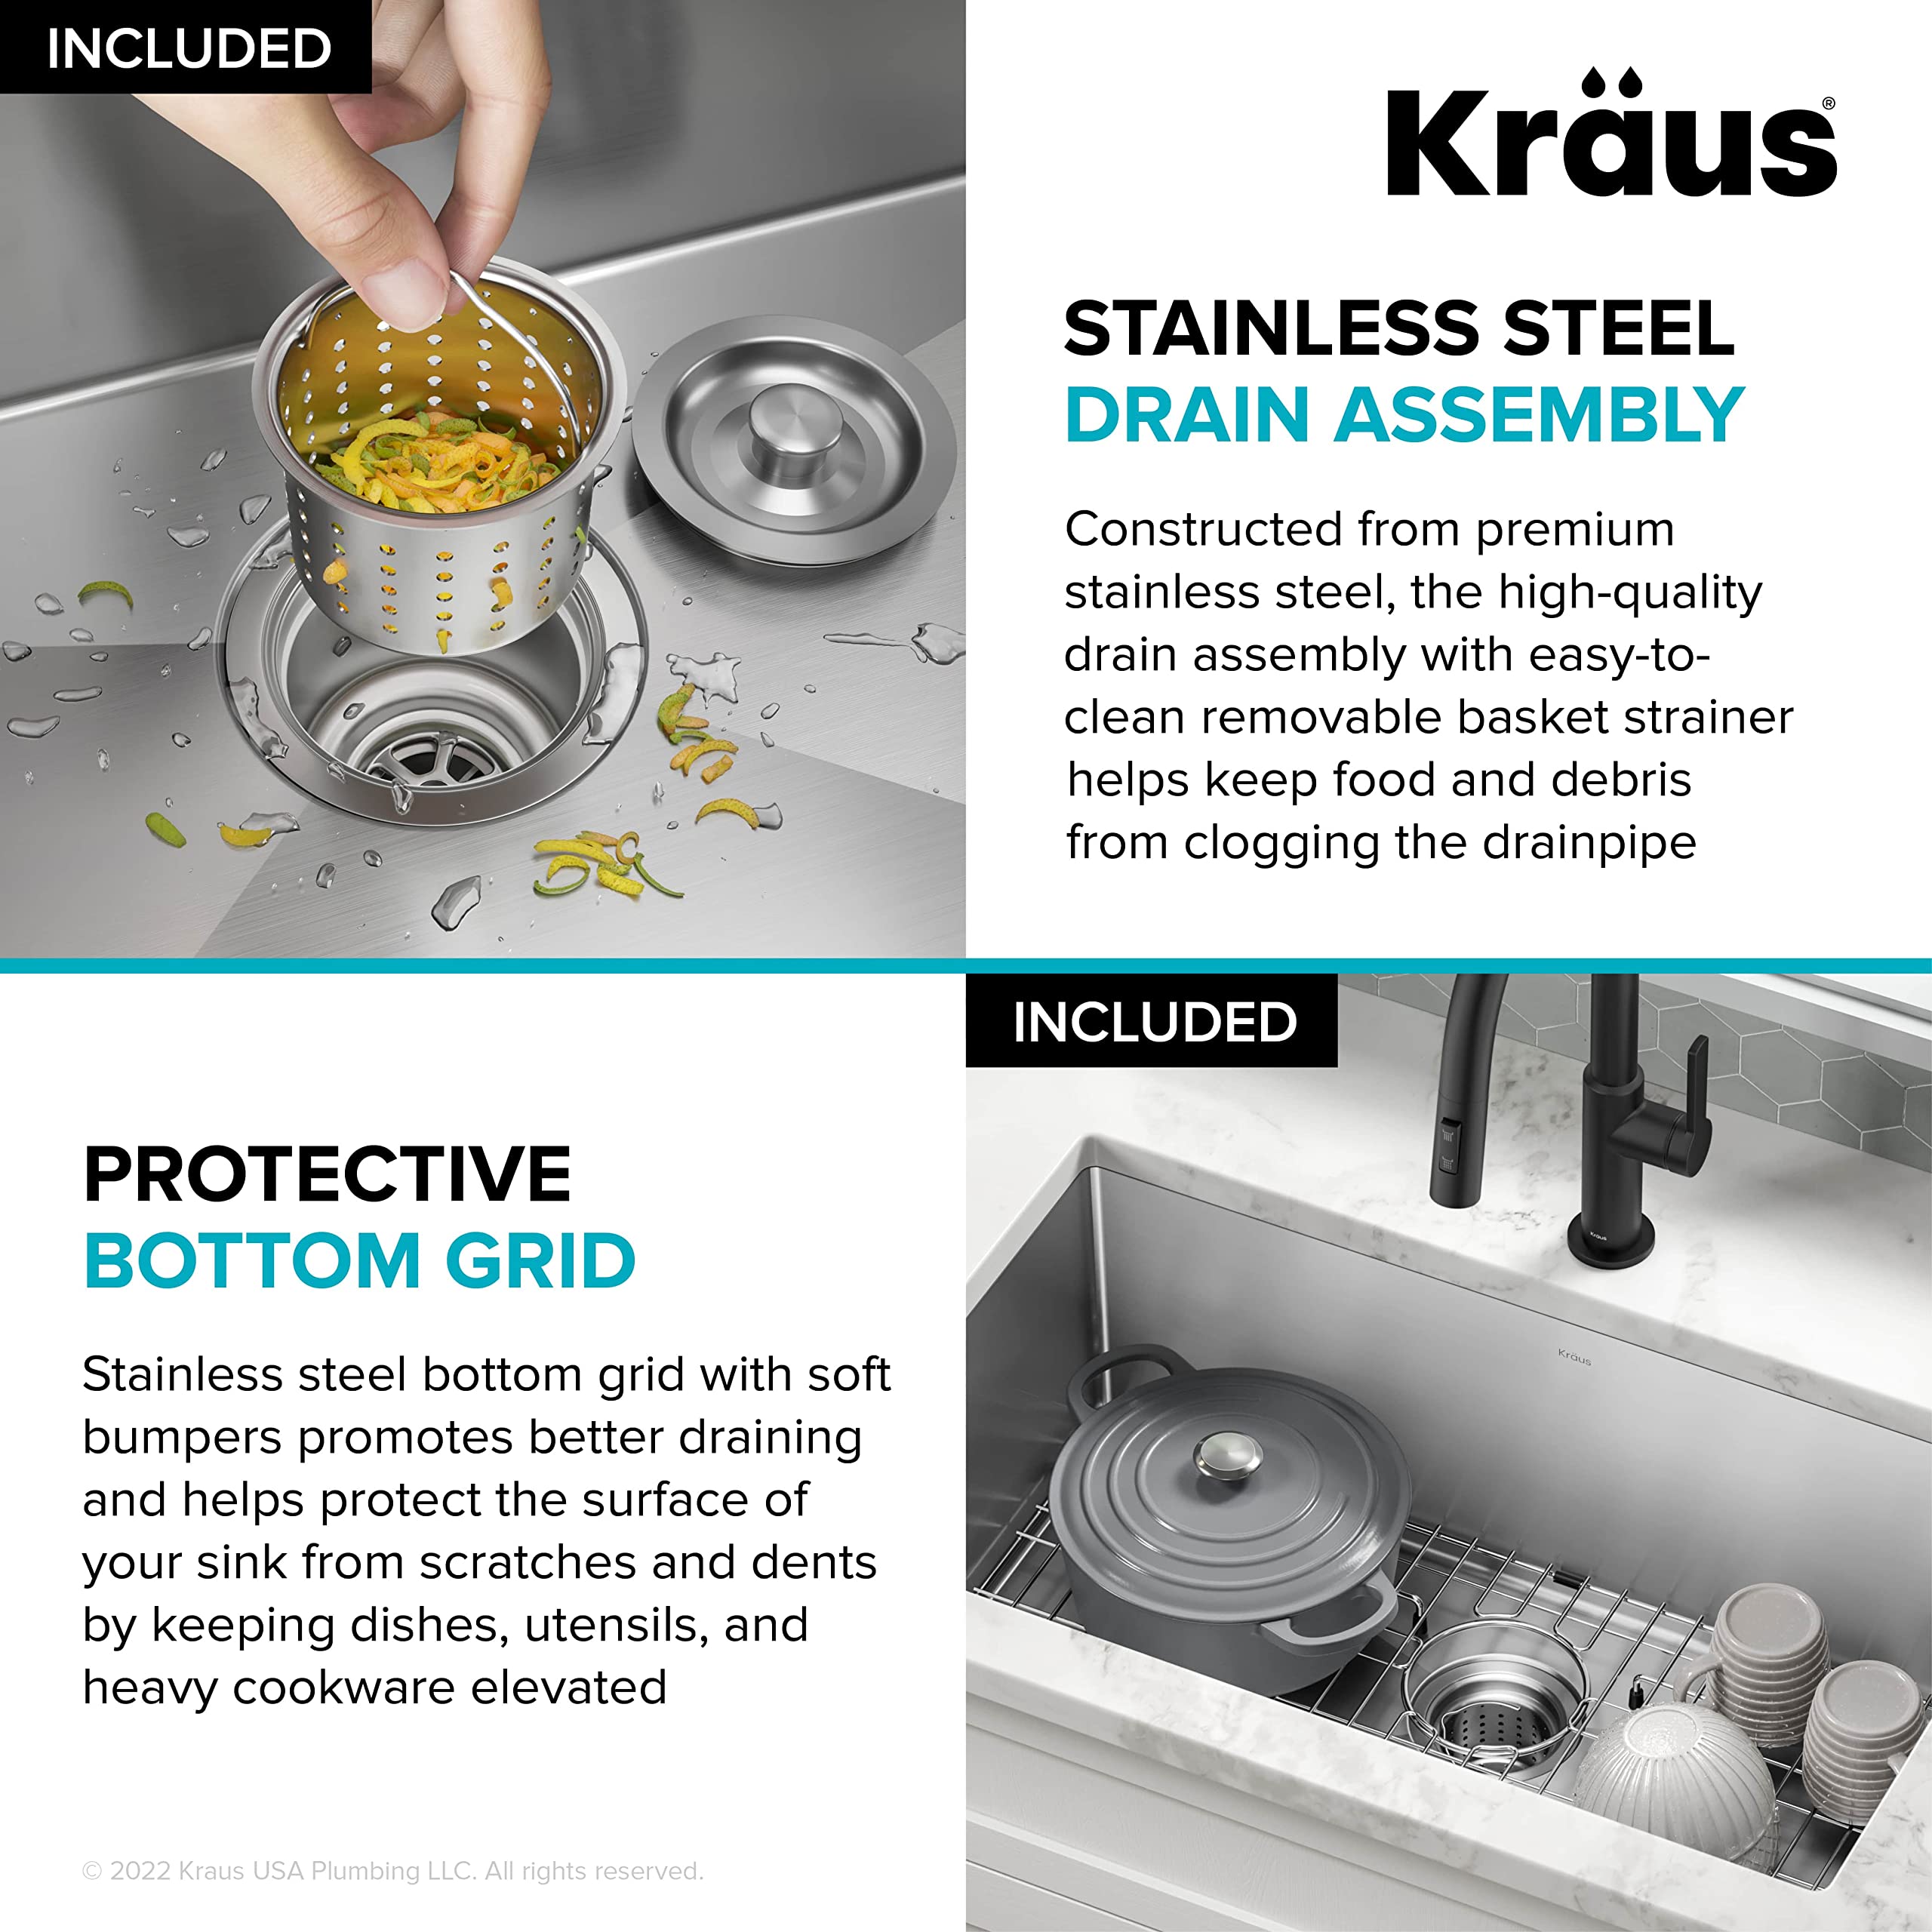 Kraus KHU100-32 Standart PRO 16 Gauge Undermount Single Bowl Stainless Steel Kitchen Sink, 32 Inch